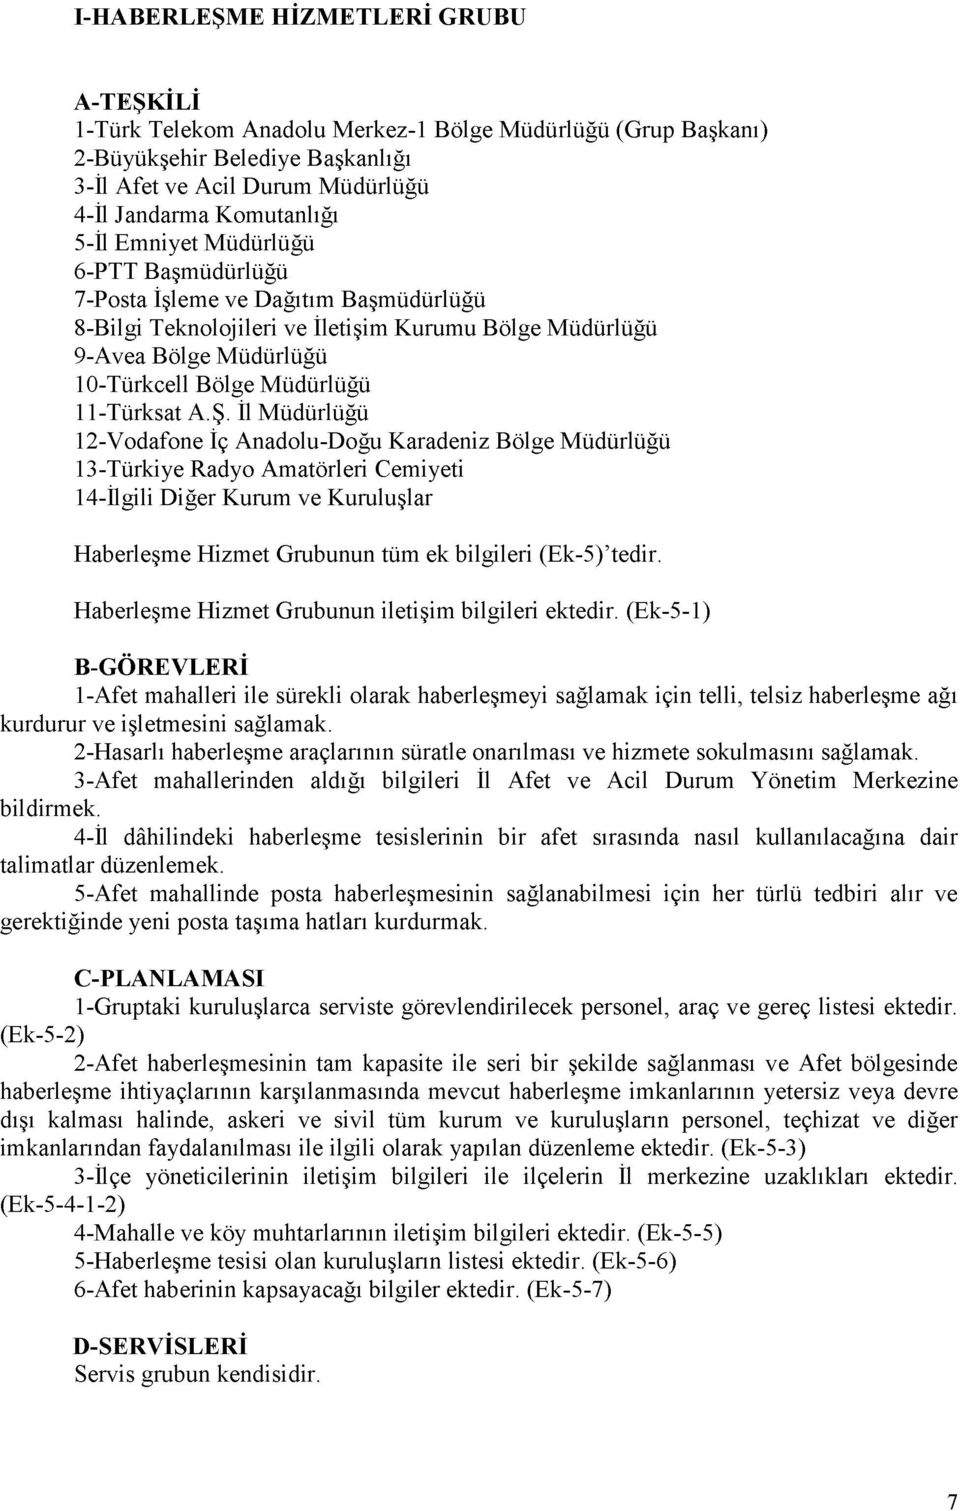 İl Müdürlüğü 12-Vodafone İç Anadolu-Doğu Karadeniz Bölge Müdürlüğü 13-Türkiye Radyo Amatörleri Cemiyeti 14-İlgili Diğer Kurum ve Kuruluşlar Haberleşme Hizmet Grubunun tüm ek bilgileri (Ek-5) tedir.